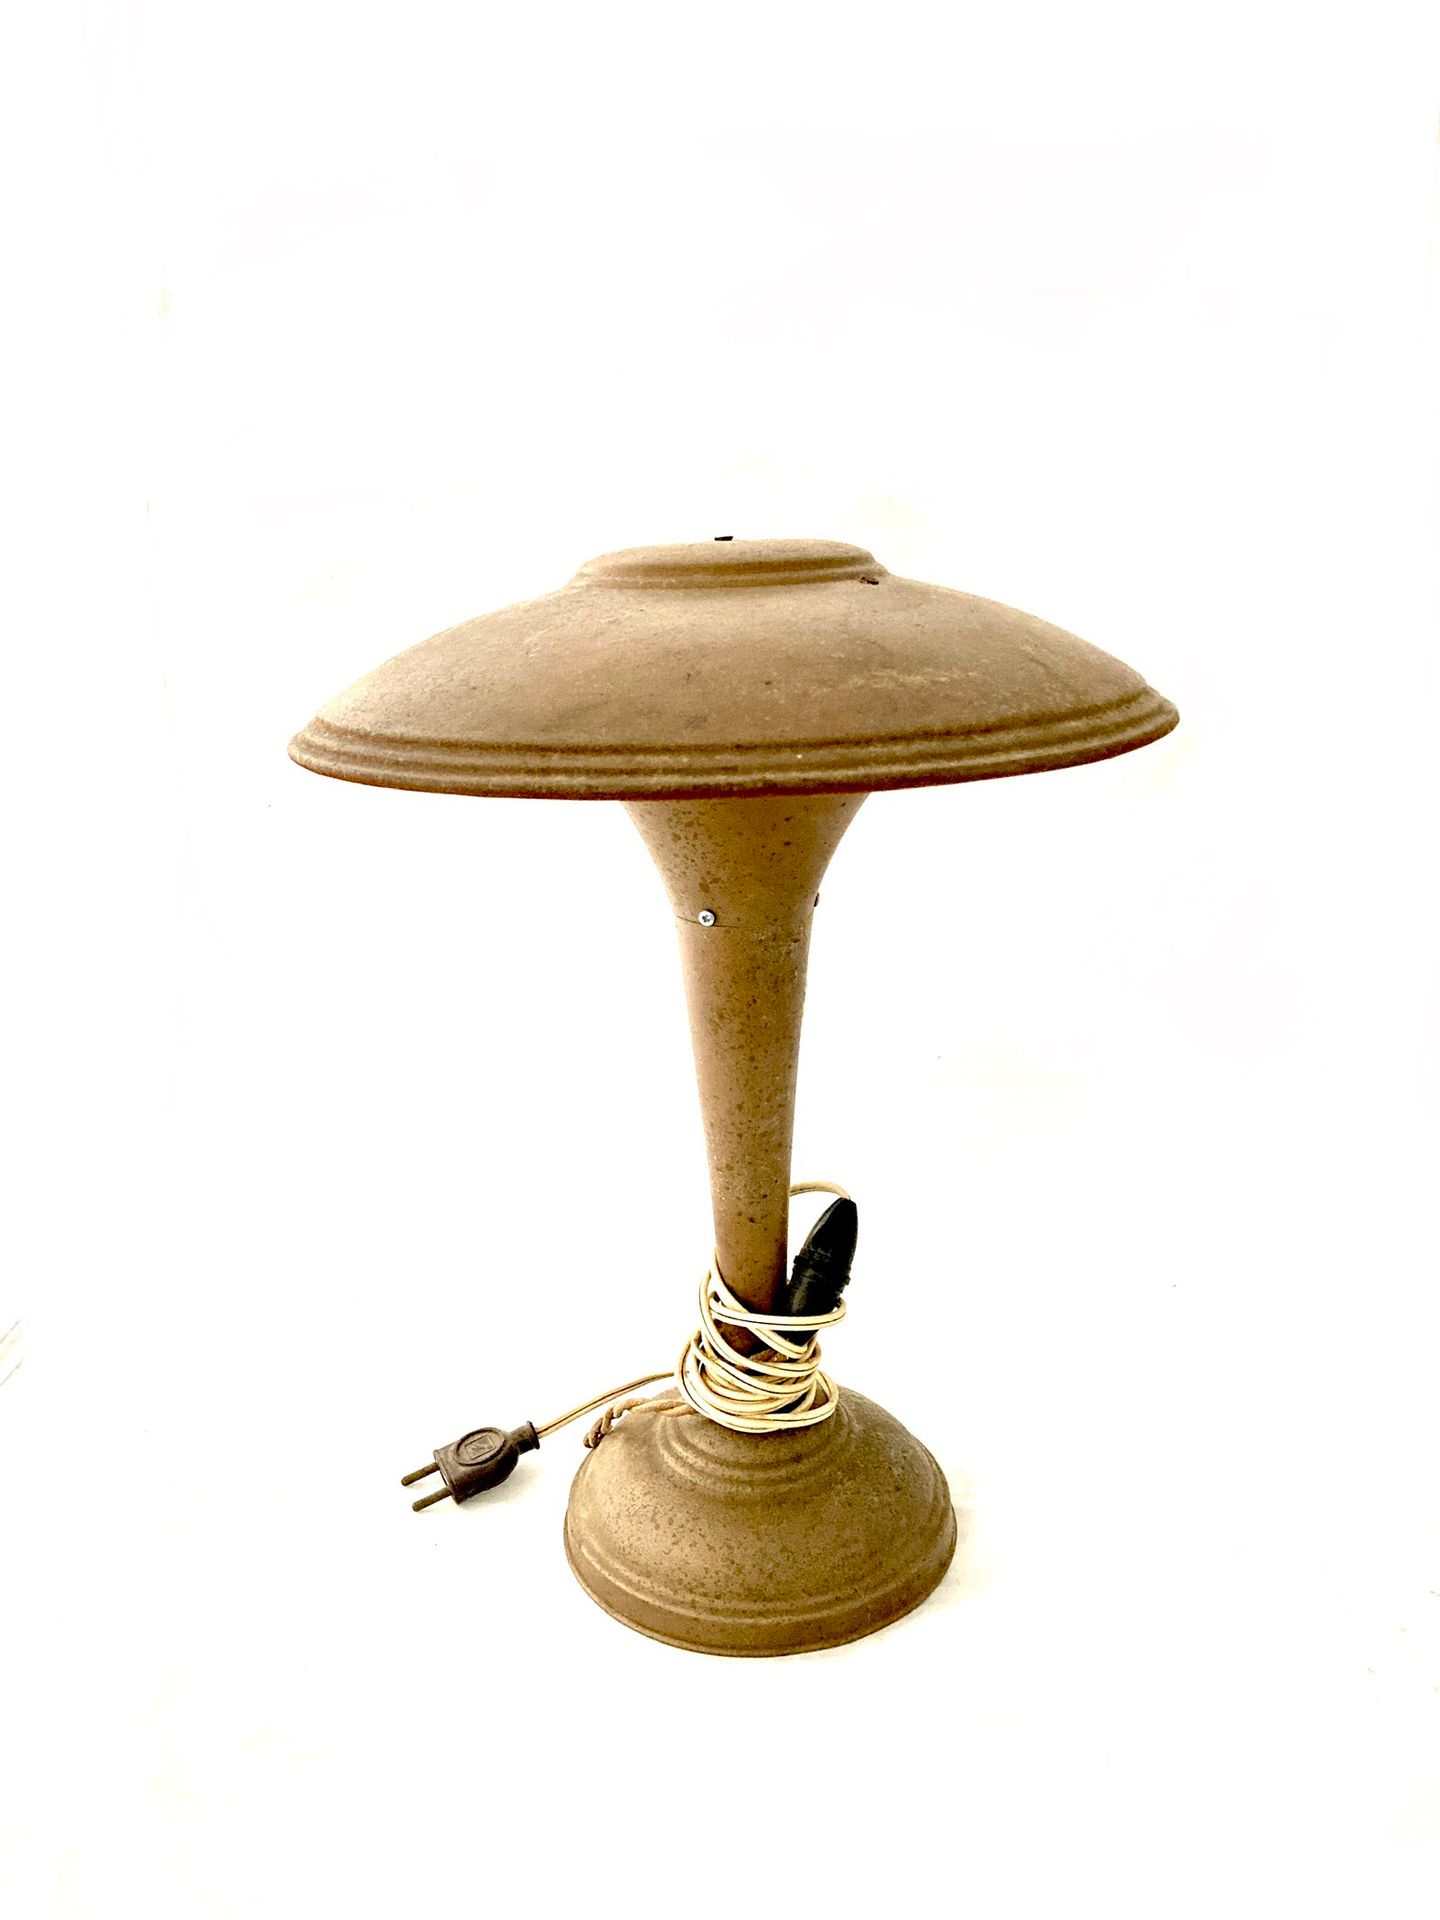 Null 金属蘑菇灯。

20世纪中期。

高35厘米。

氧化作用。

附有第二盏台灯。

不带线。

高32厘米。